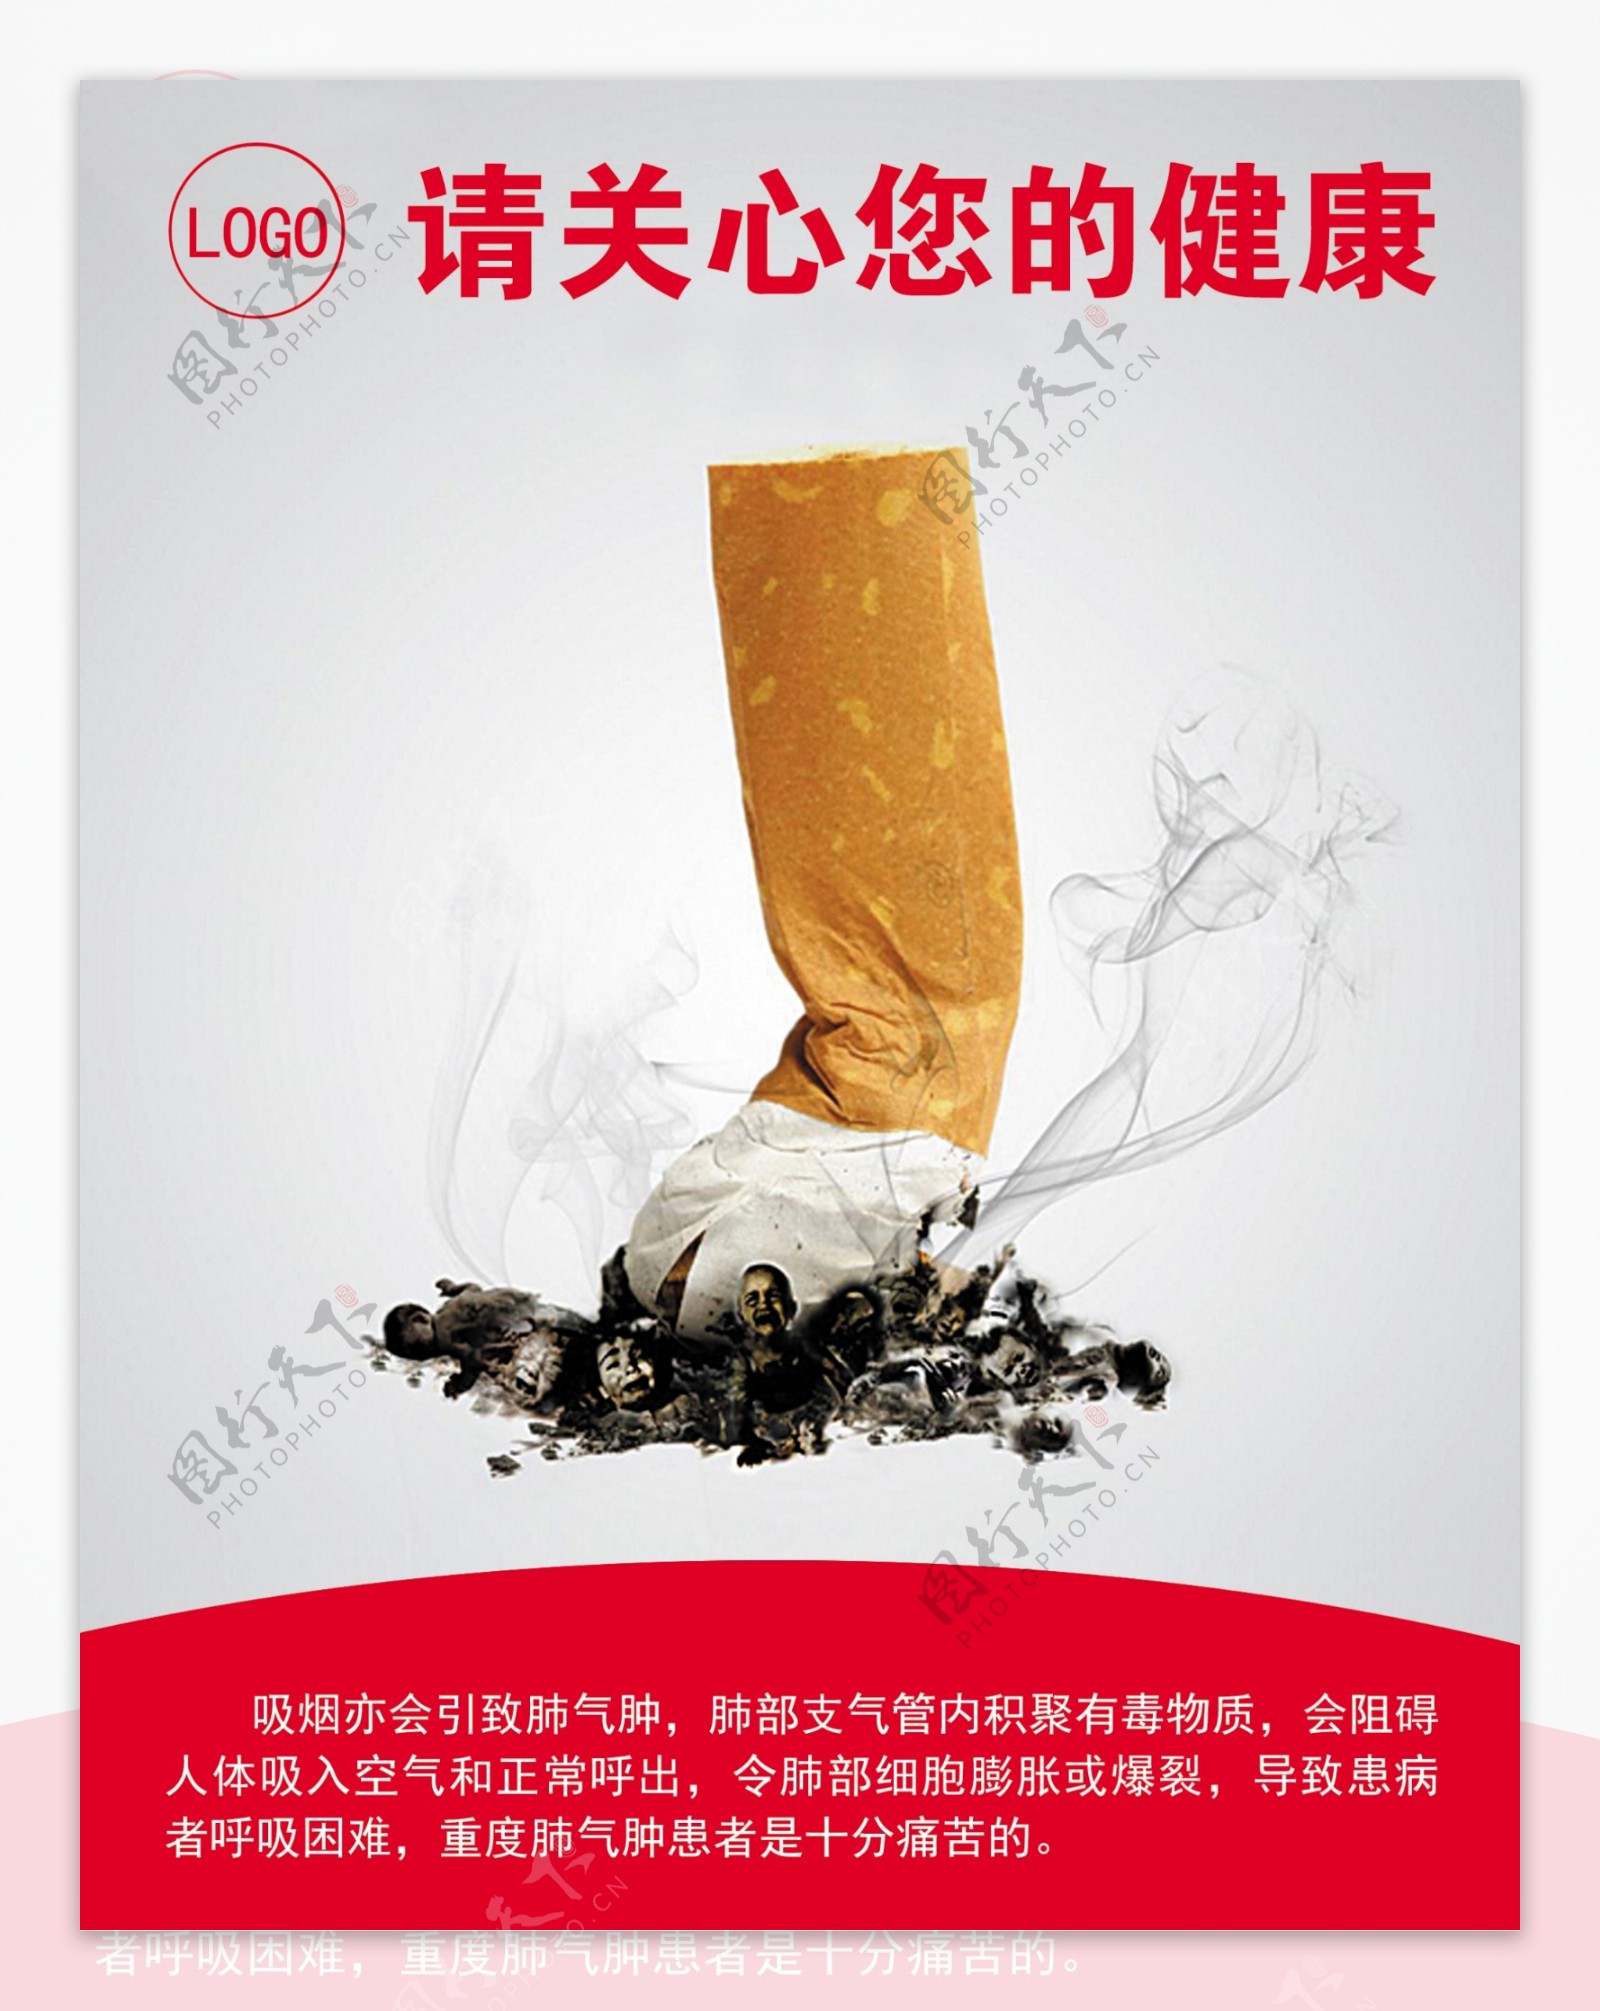 吸烟有害健康海报图片